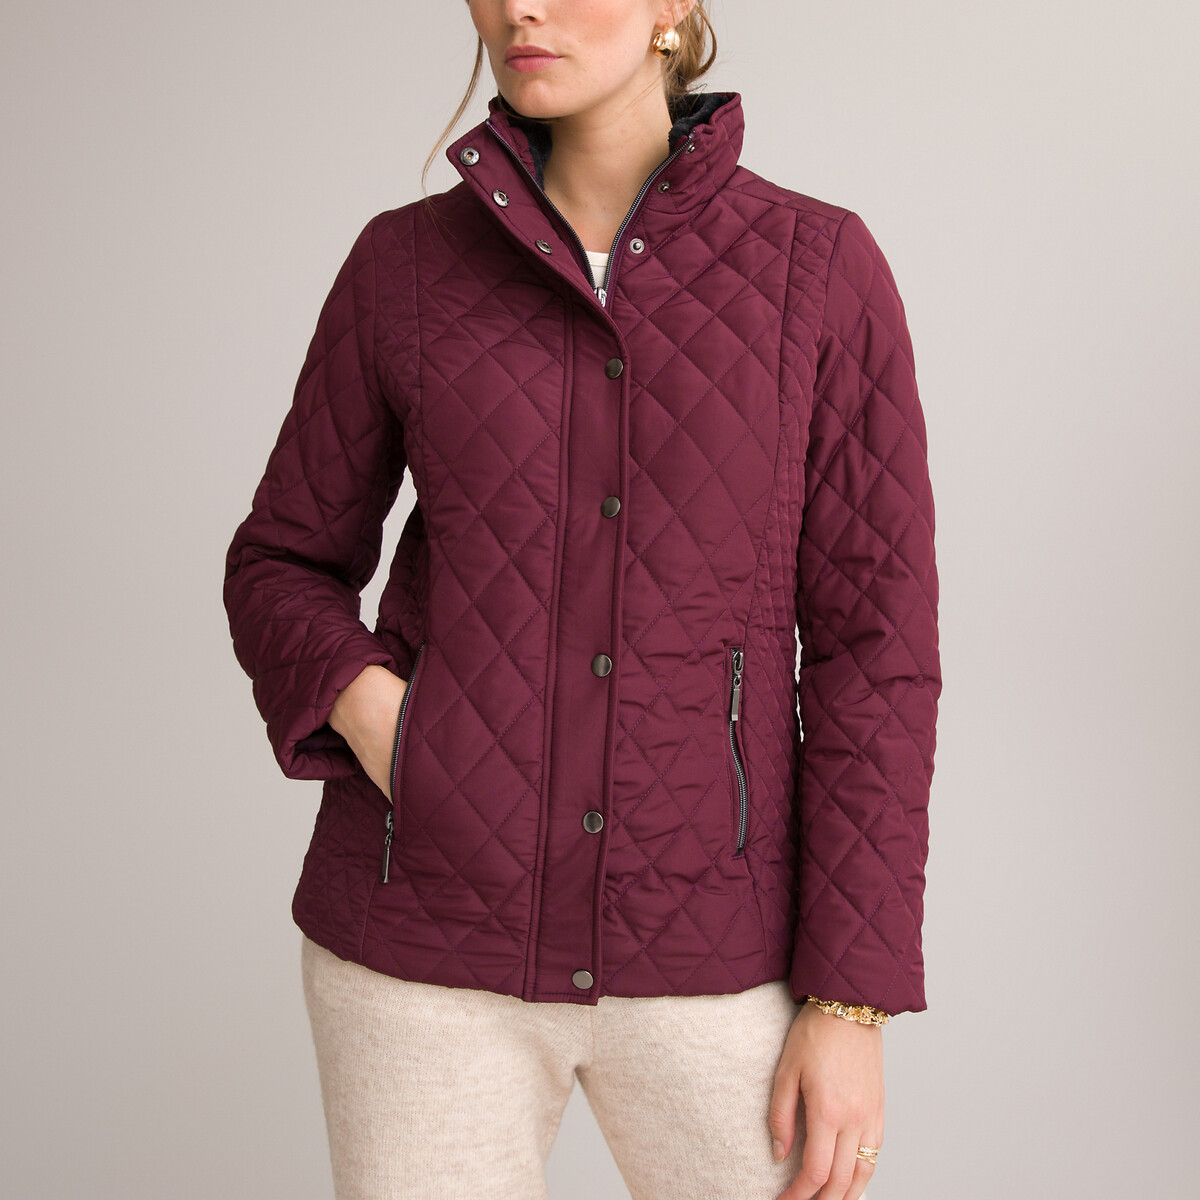 Куртка Стеганая короткая застежка на молнию для зимы 54 (FR) - 60 (RUS) розовый